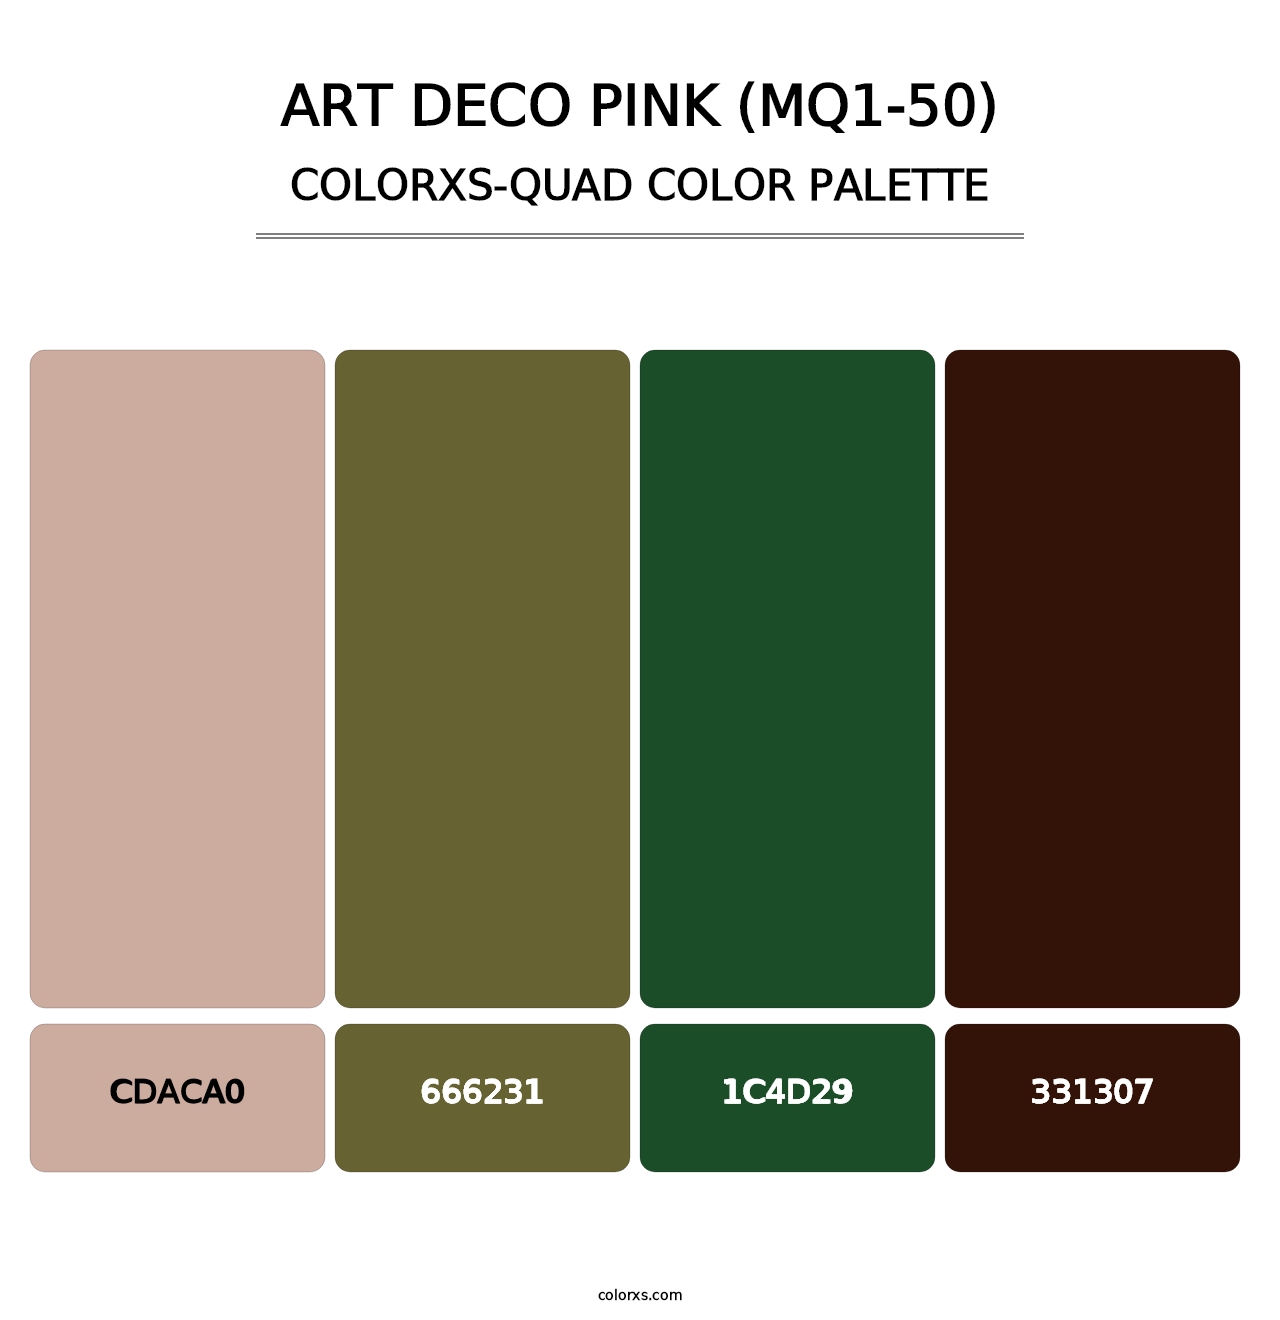 Art Deco Pink (MQ1-50) - Colorxs Quad Palette